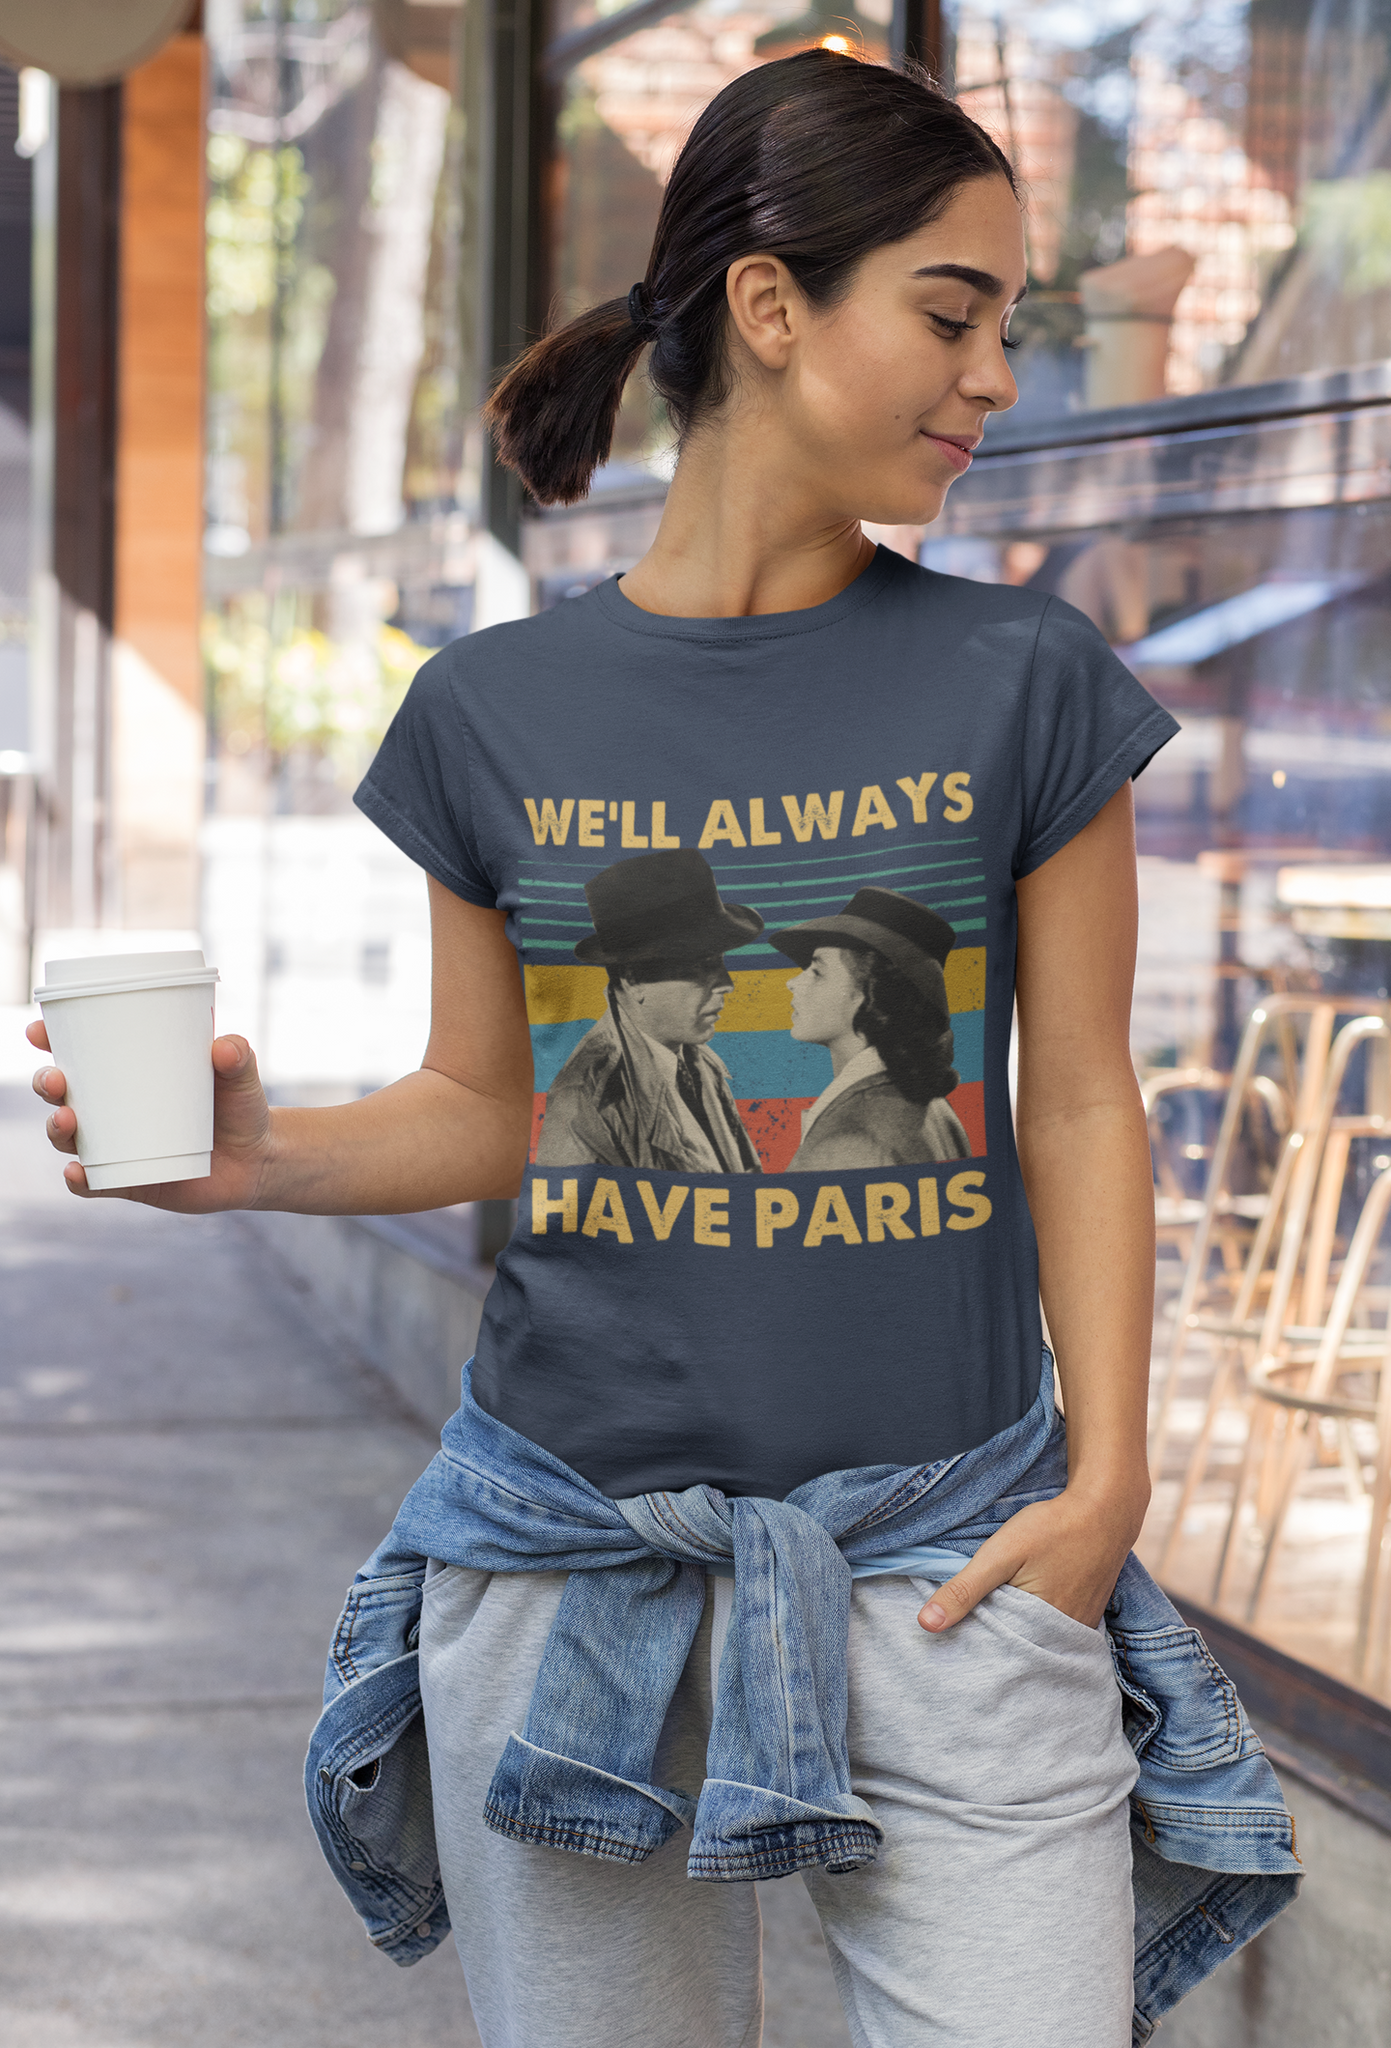 Casablanca Vintage T Shirt, Rick Blaine Ilsa Lund T Shirt, Well Always Have Paris Tshirt